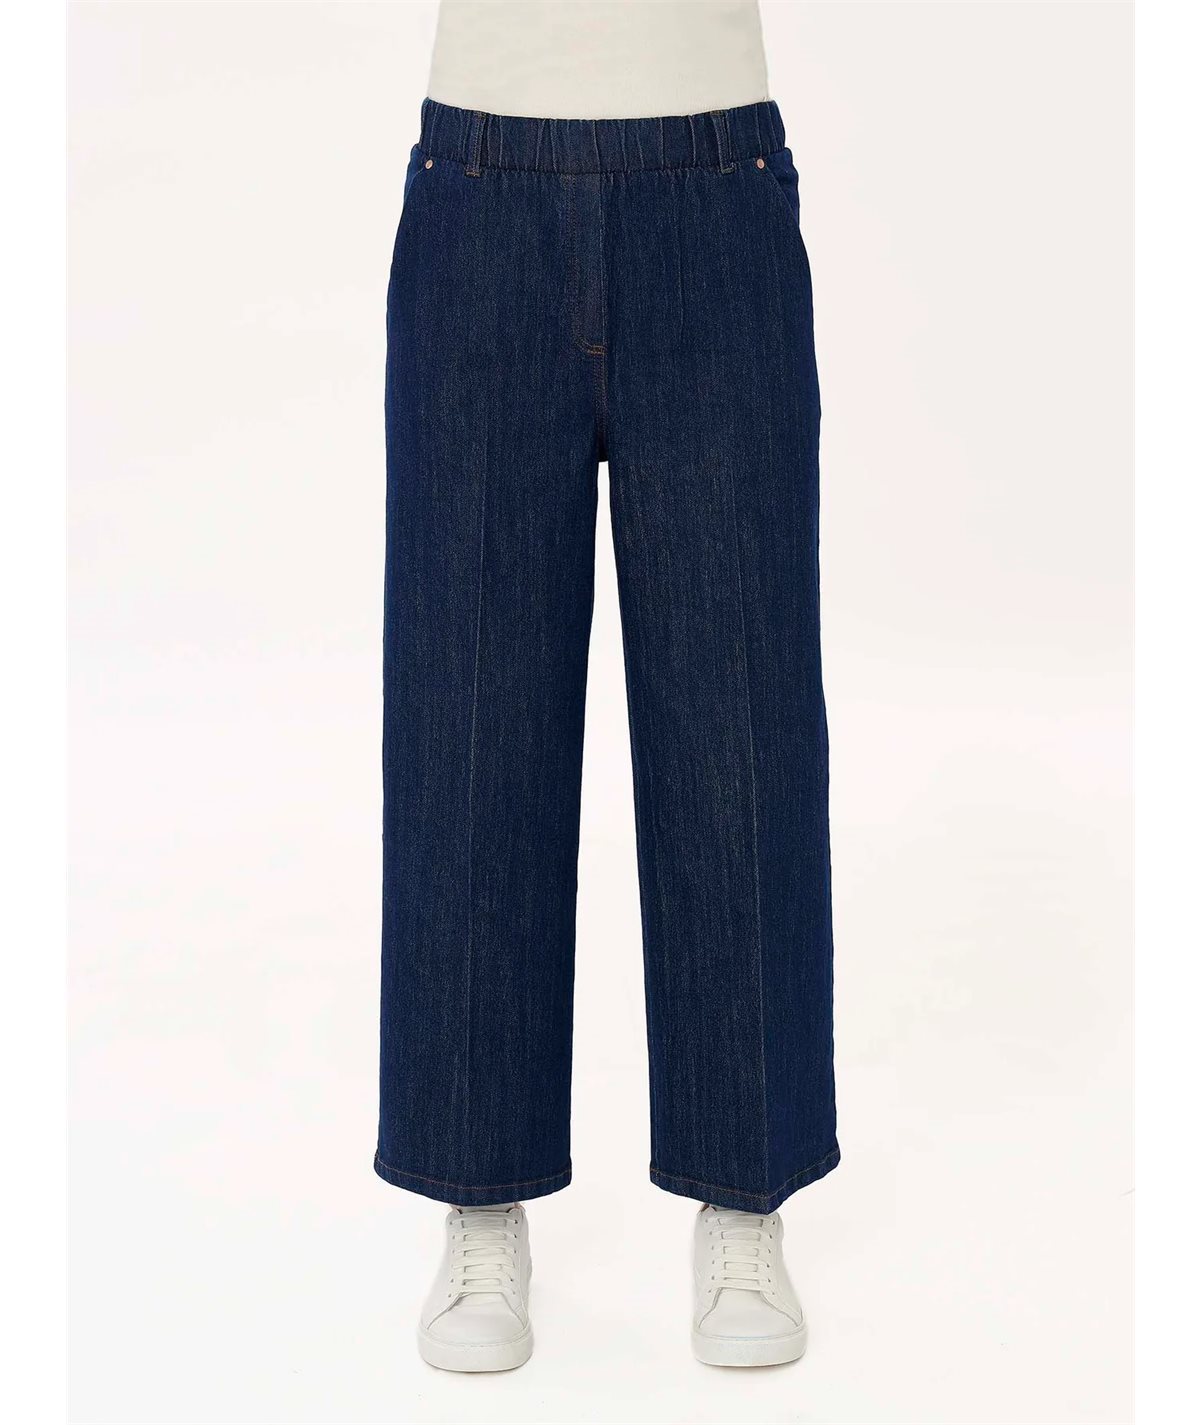 Ragno DM48P4 -Pantalone Jeans taglio Cropped in tessuto Denim-Comfort Colore: Bleu Persia 057